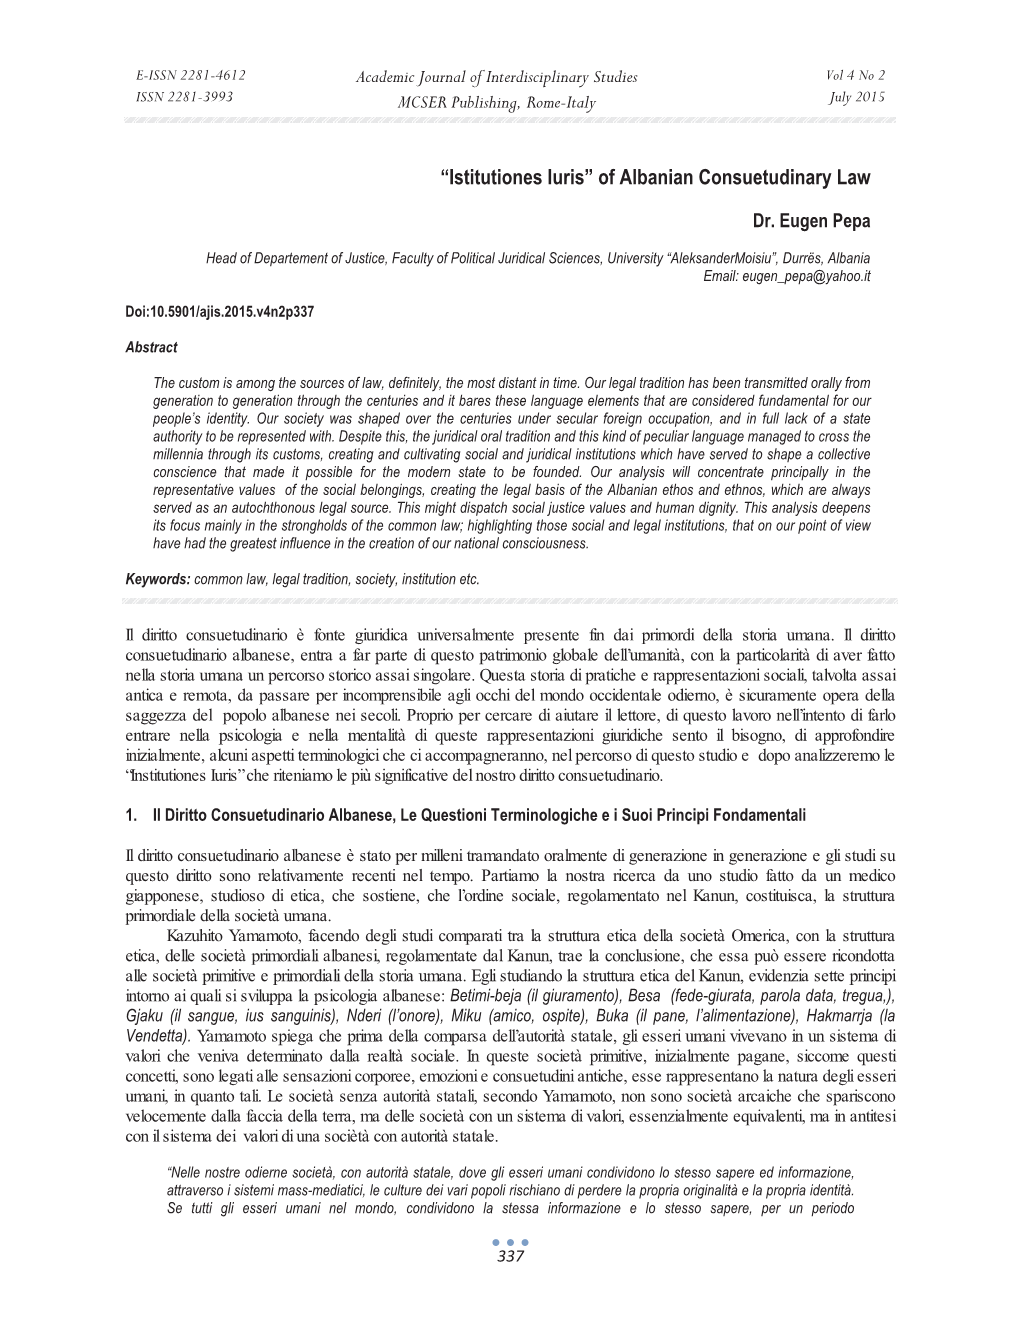 Istitutiones Iuris” of Albanian Consuetudinary Law